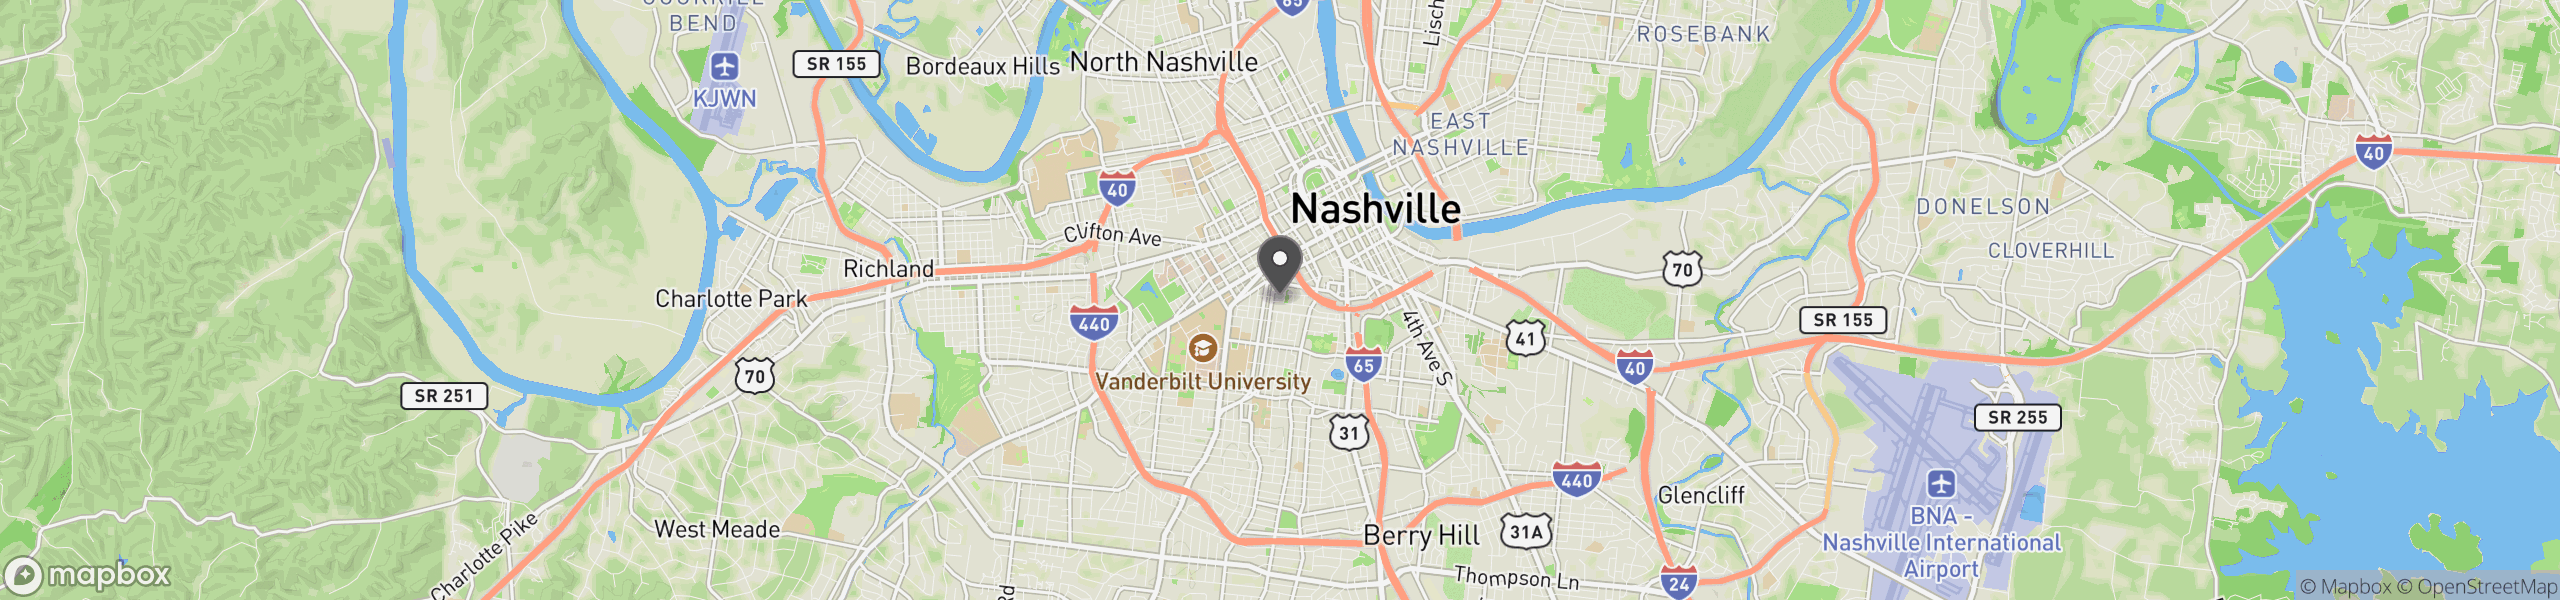 Nashville, TN 37203